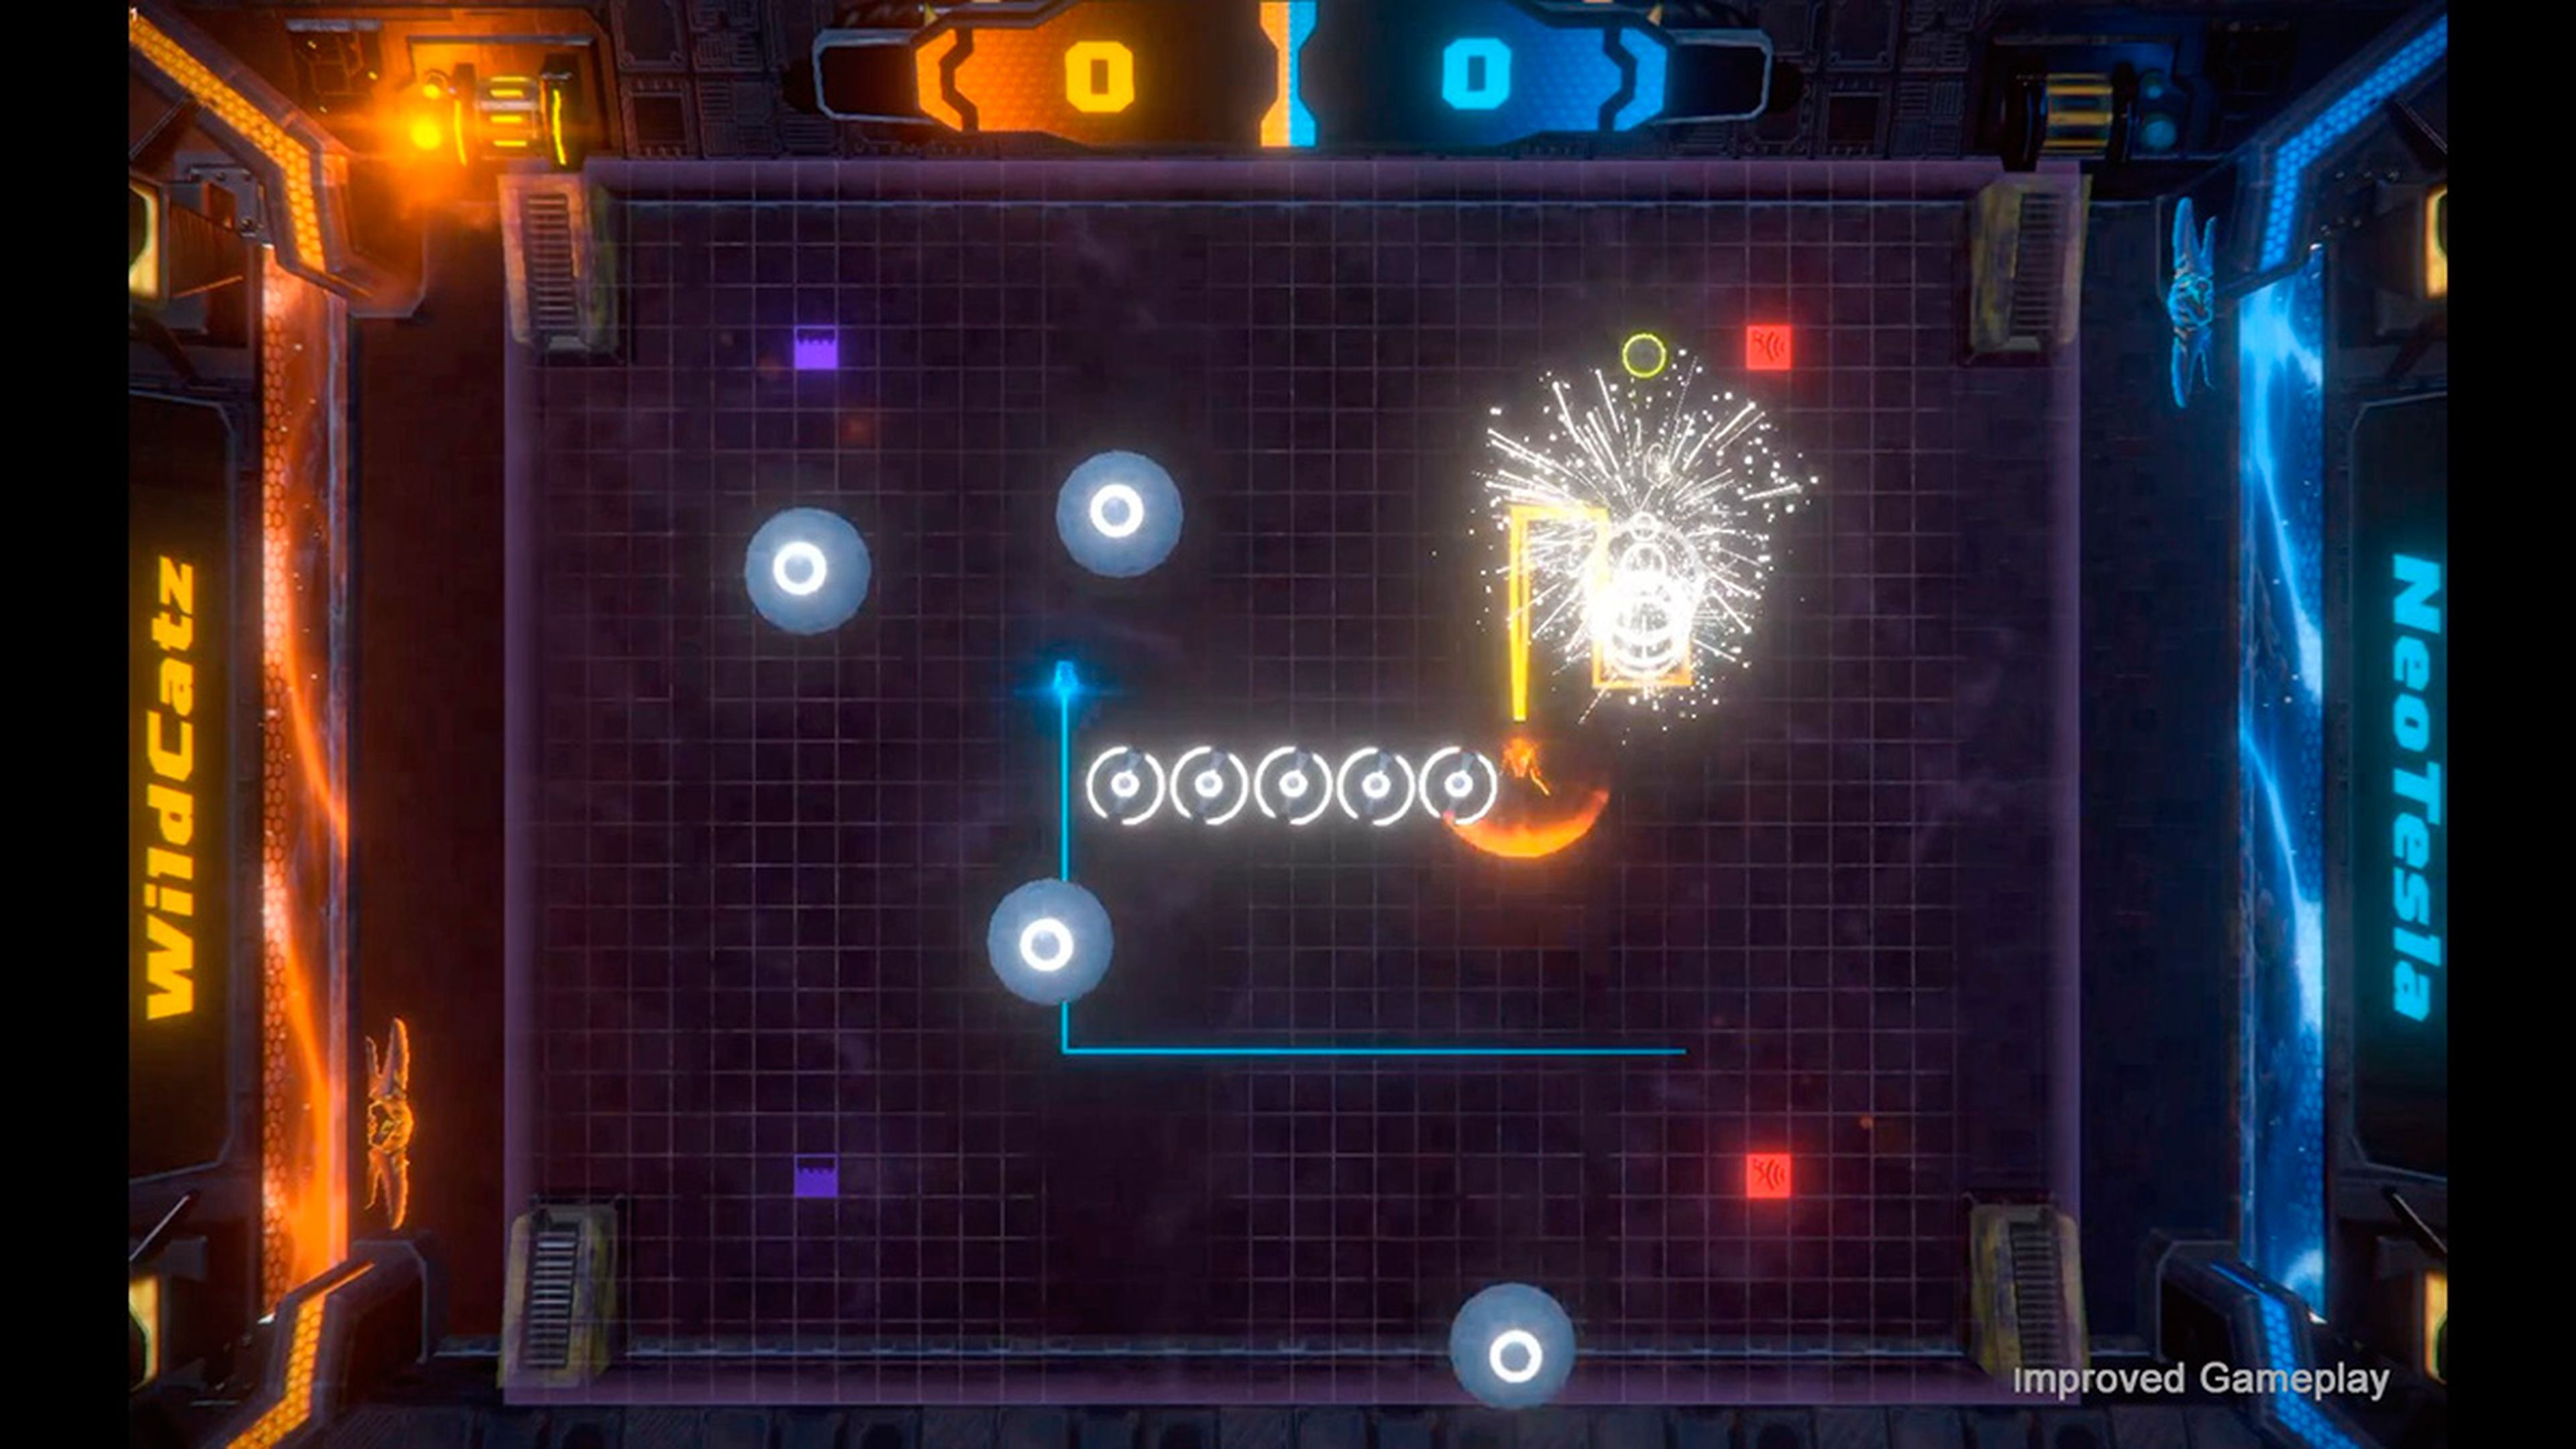 Laser Strikers ofrece modo multijugador local para hasta cuatro jugadores para disputar partidas de dos contra dos.